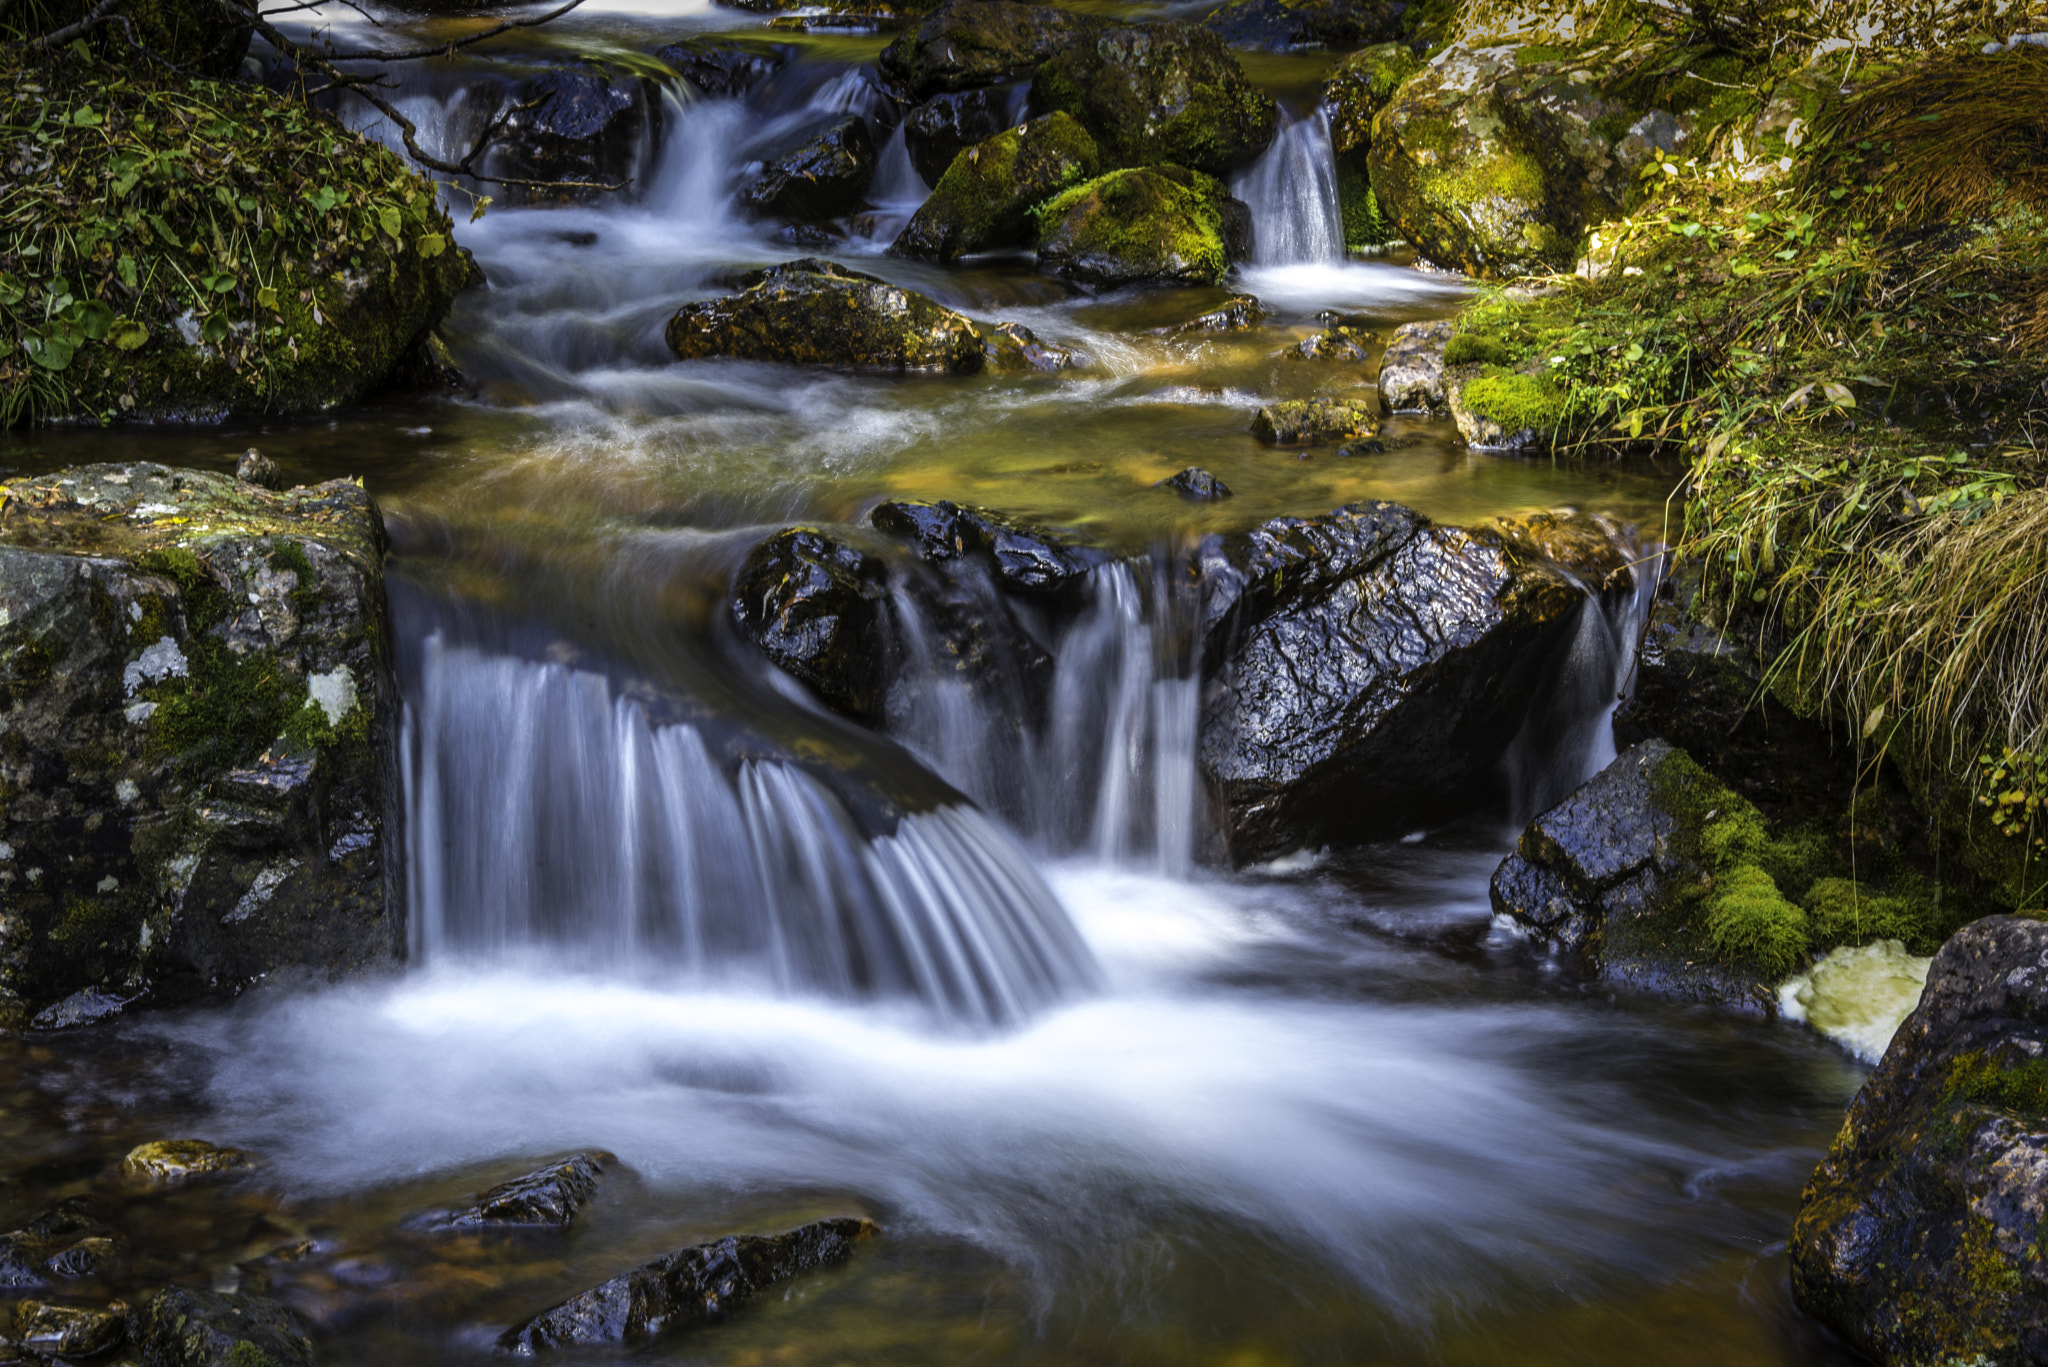 Nikon D750 + AF Zoom-Nikkor 28-85mm f/3.5-4.5 sample photo. Taylor creek cascade, banff national park photography